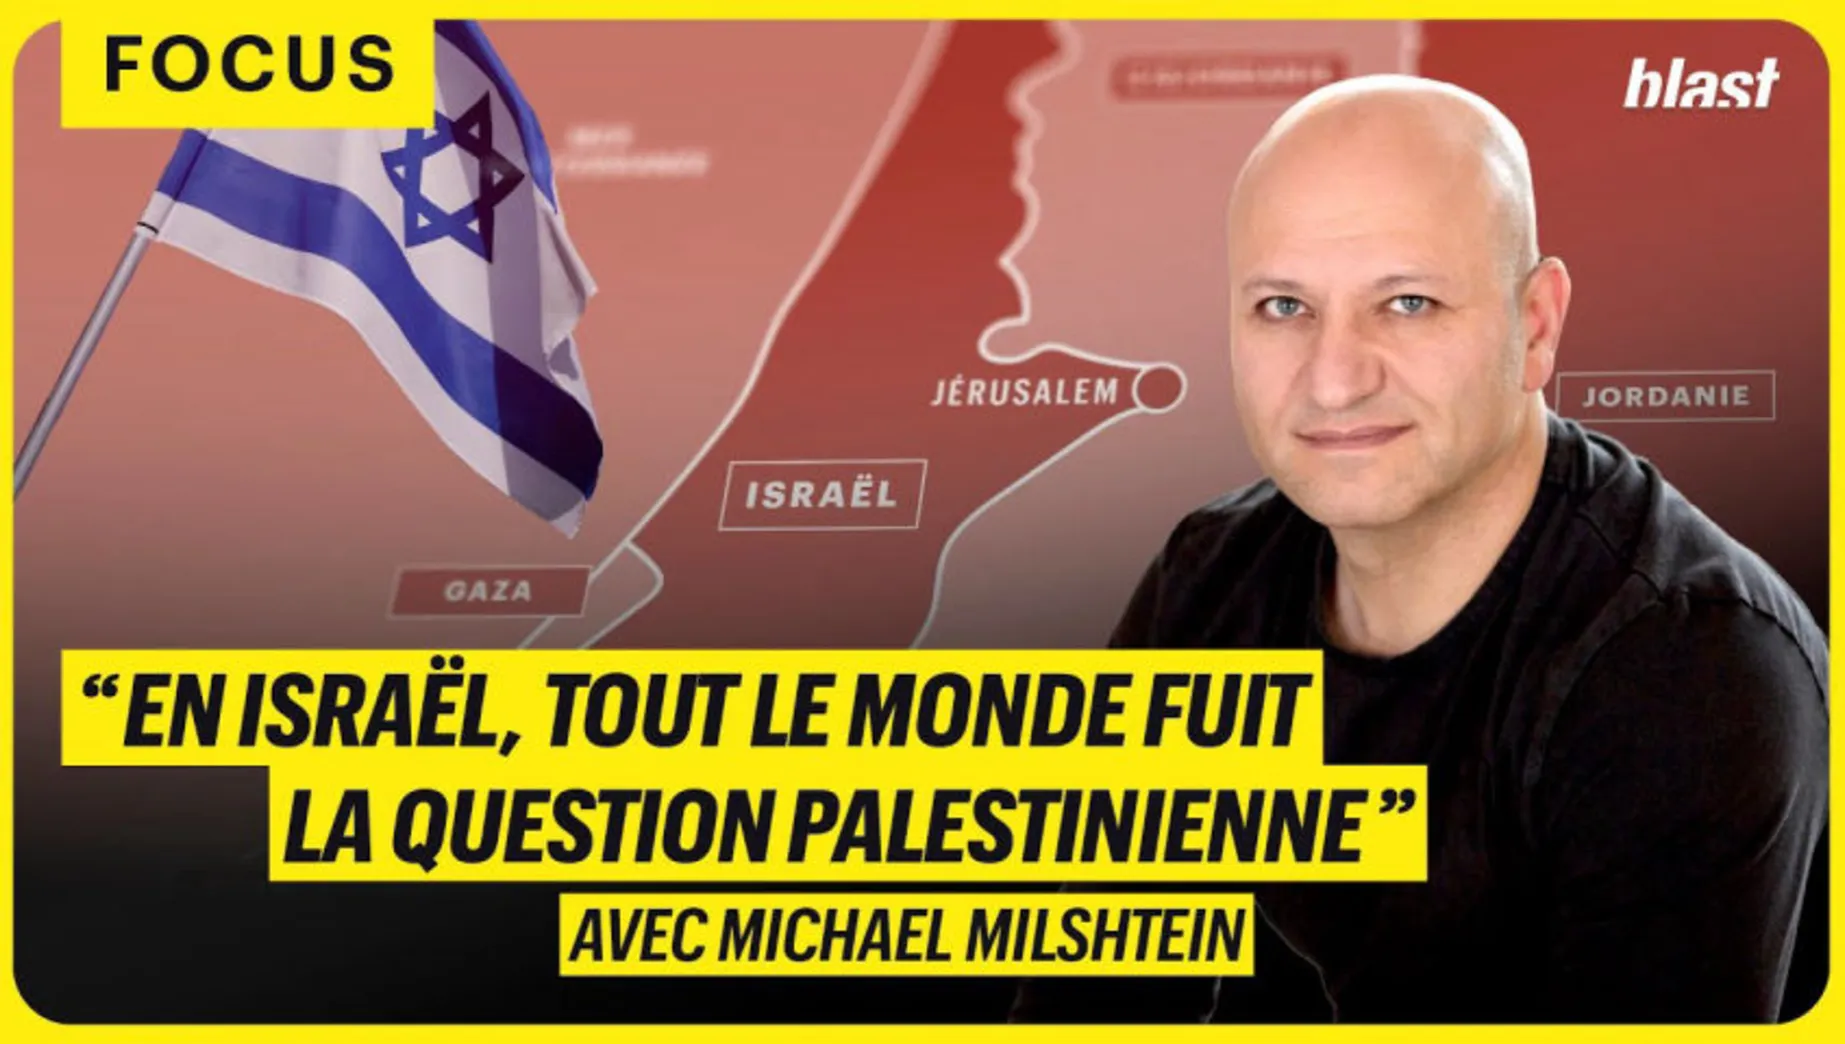 "EN ISRAËL, TOUT LE MONDE FUIT LA QUESTION PALESTINIENNE"